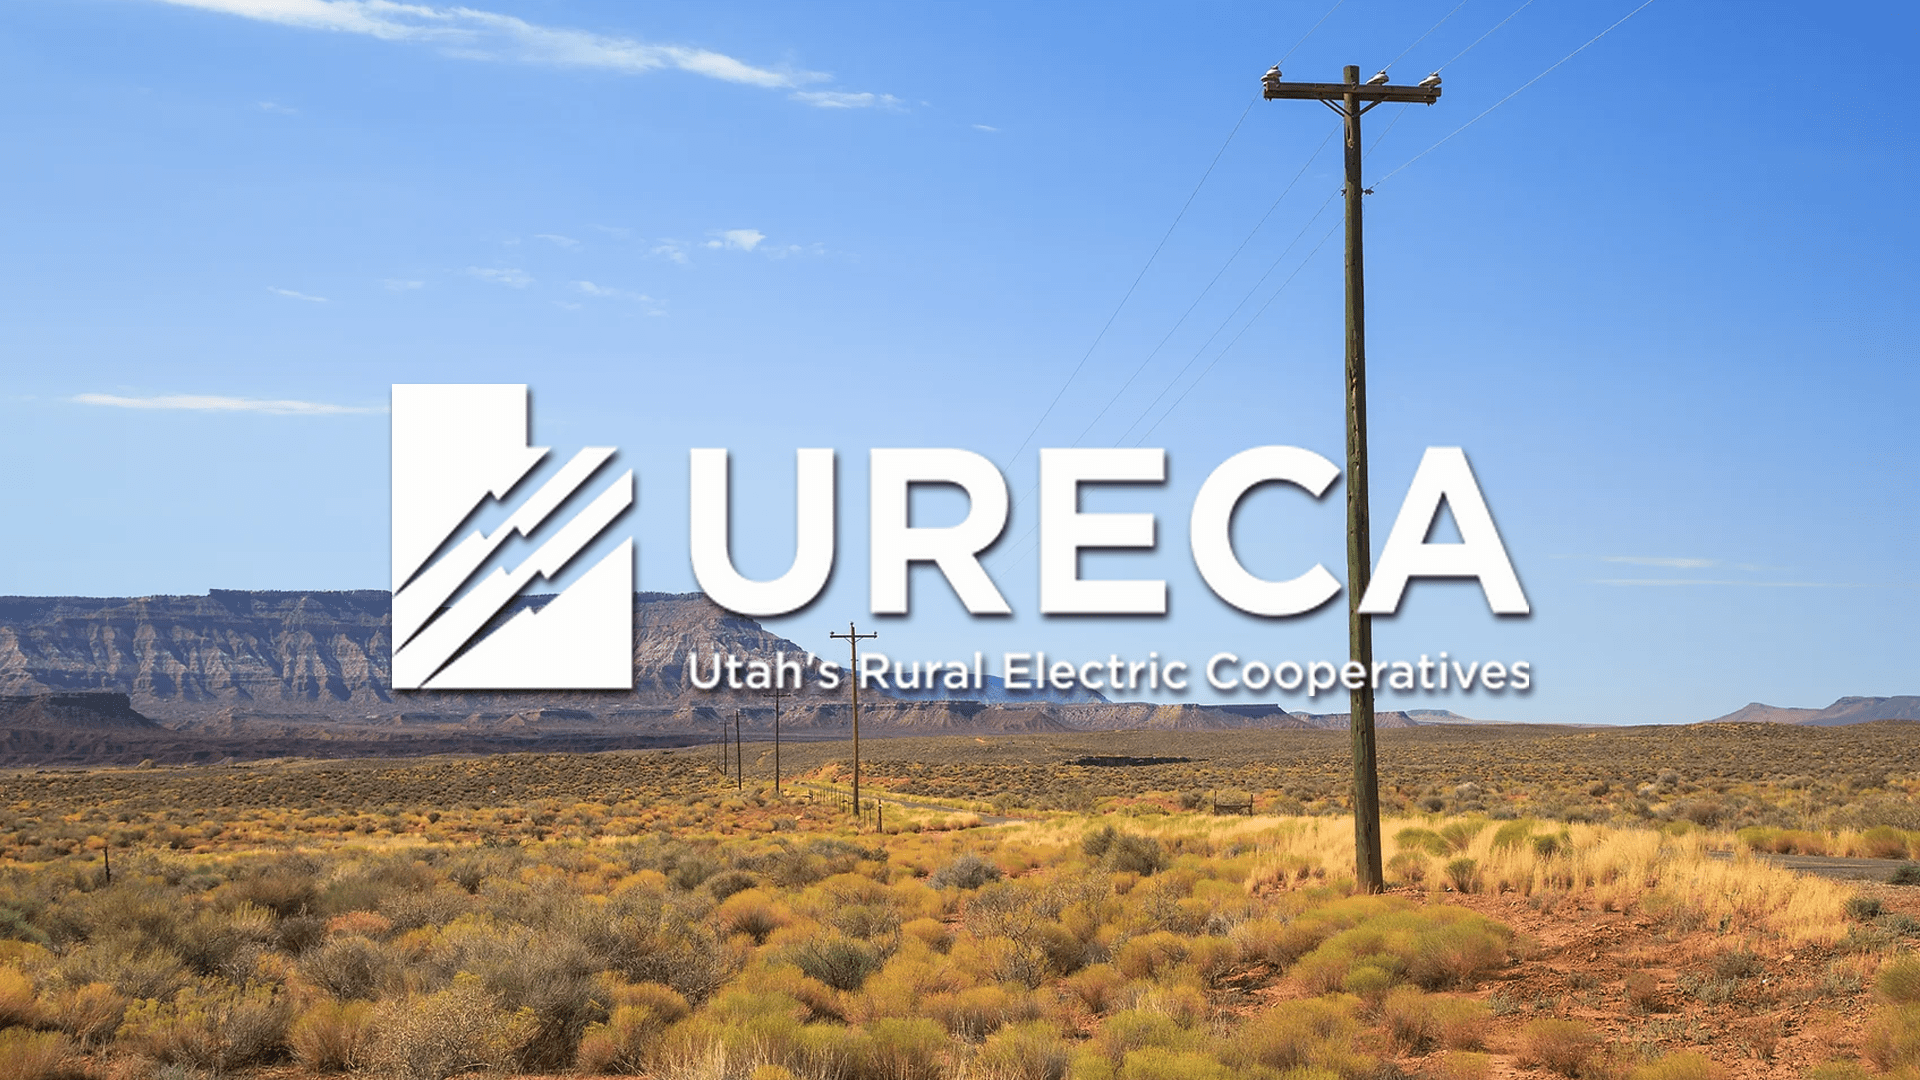 Utah's Rural Electric Cooperative Assoc. Annual Meeting, South Jordan, UT